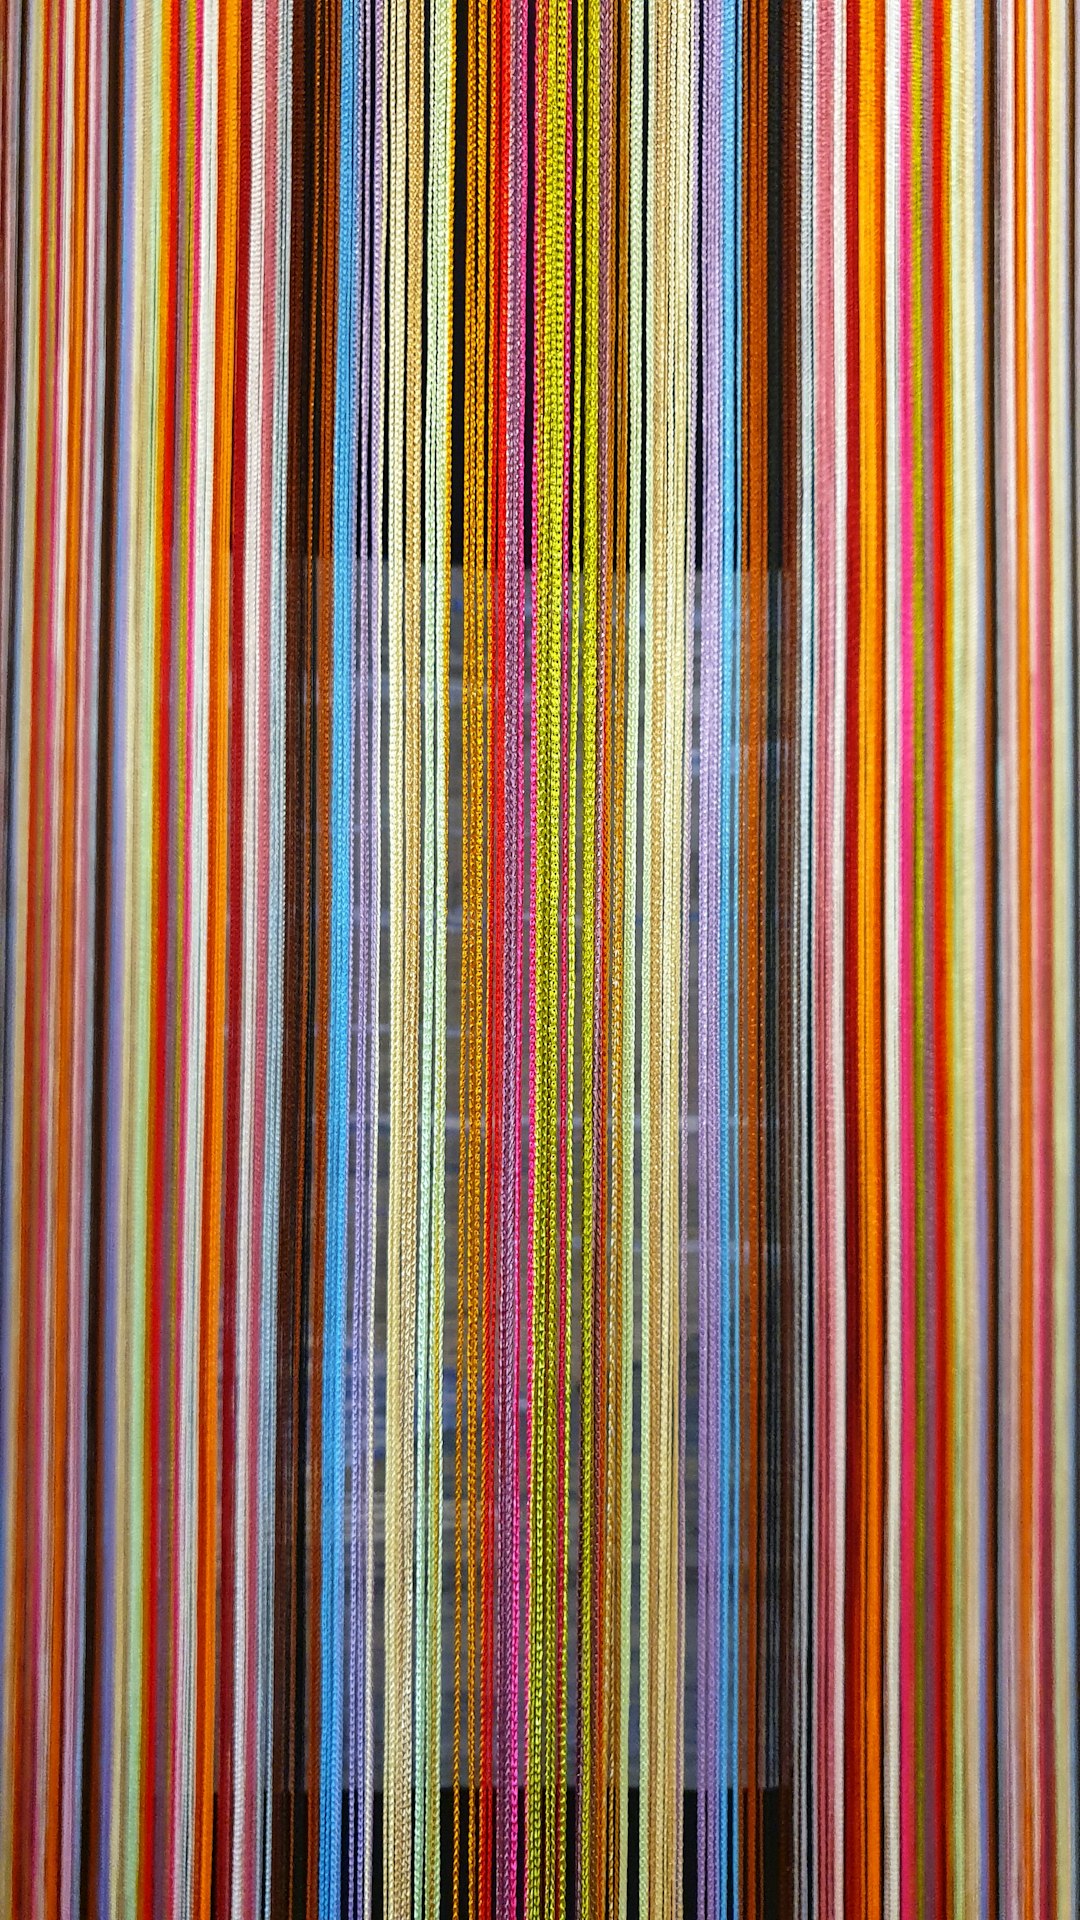  multicolored striped wallpaper thread